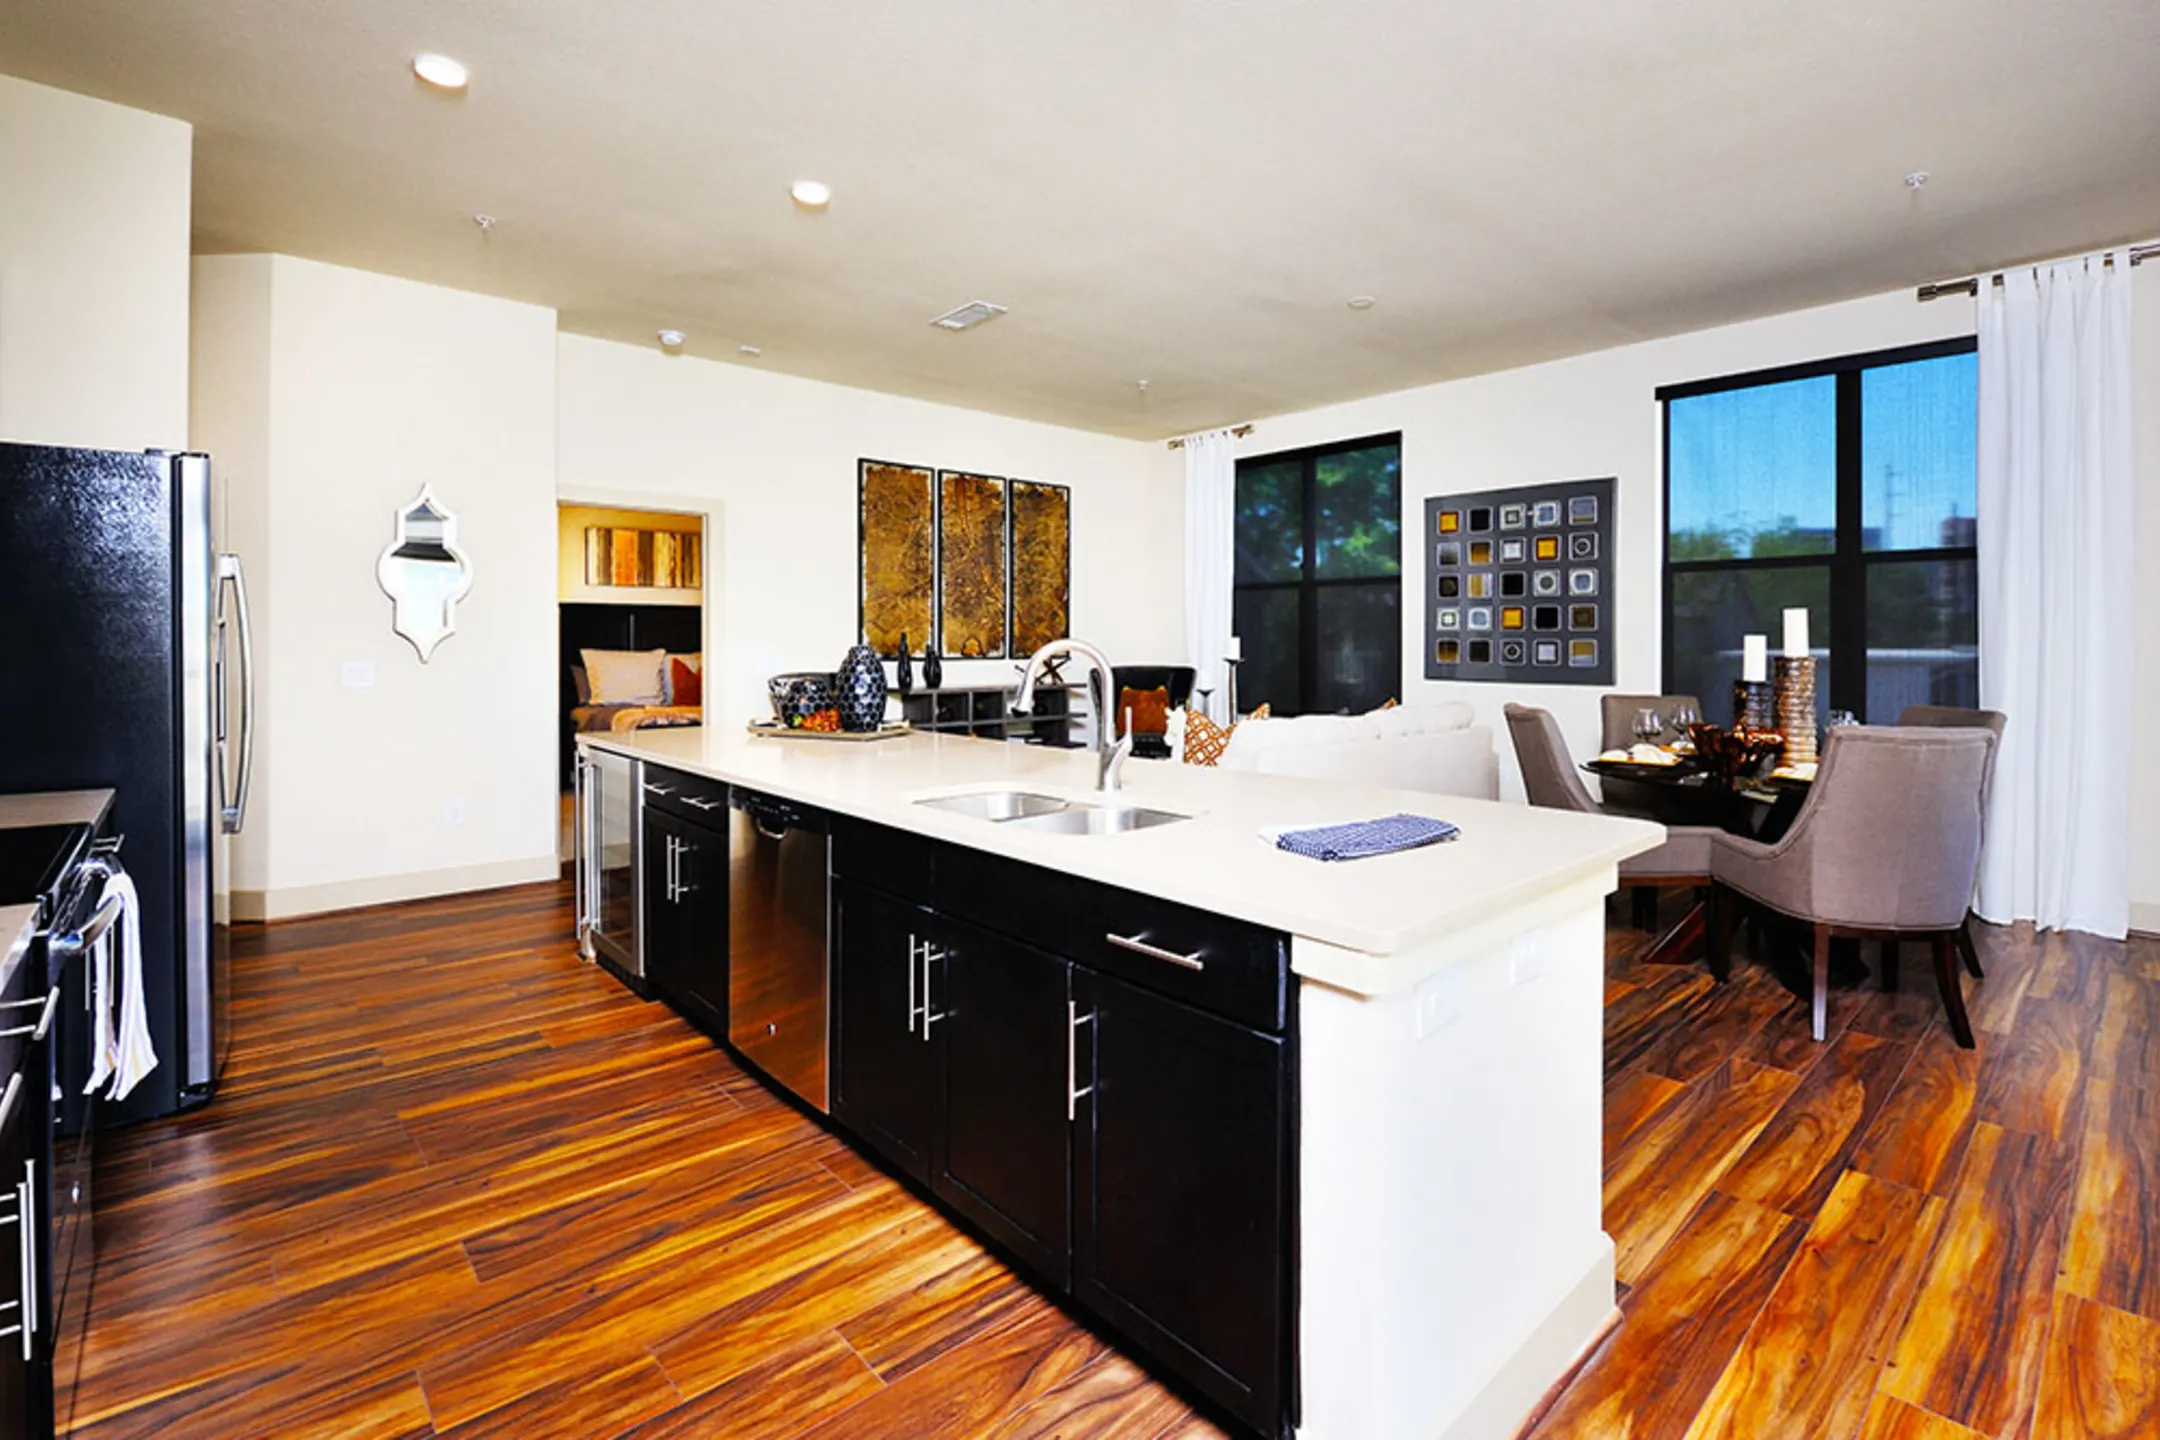 Kitchen - 77054 Luxury Properties - Houston, TX